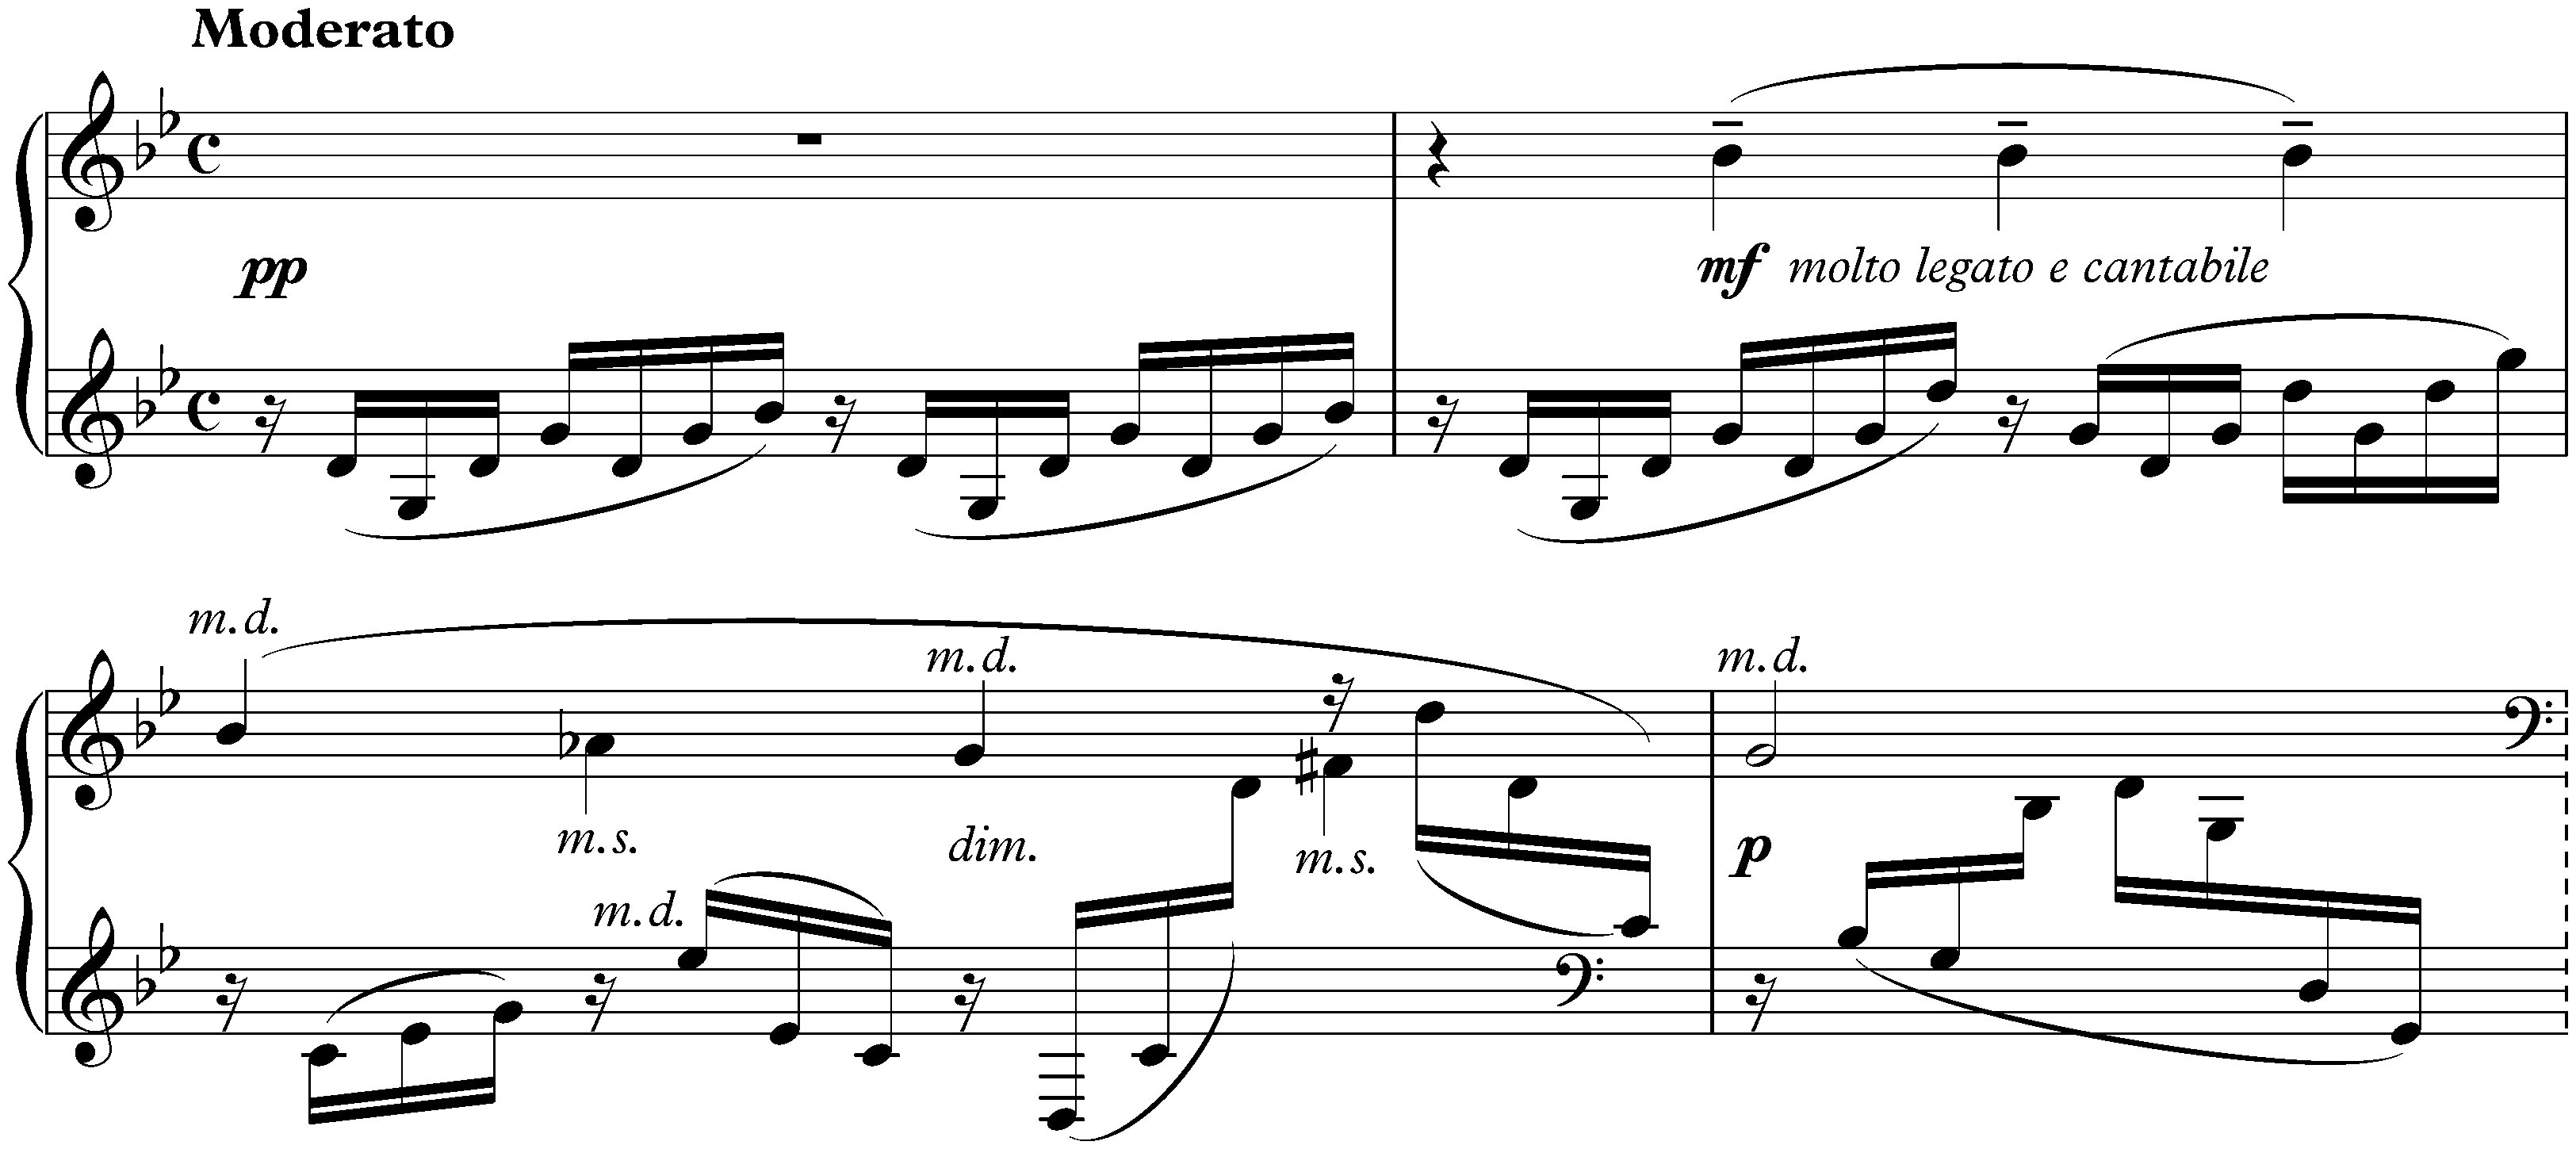 Études-tableaux, op. 33; 8. (5.) G minor